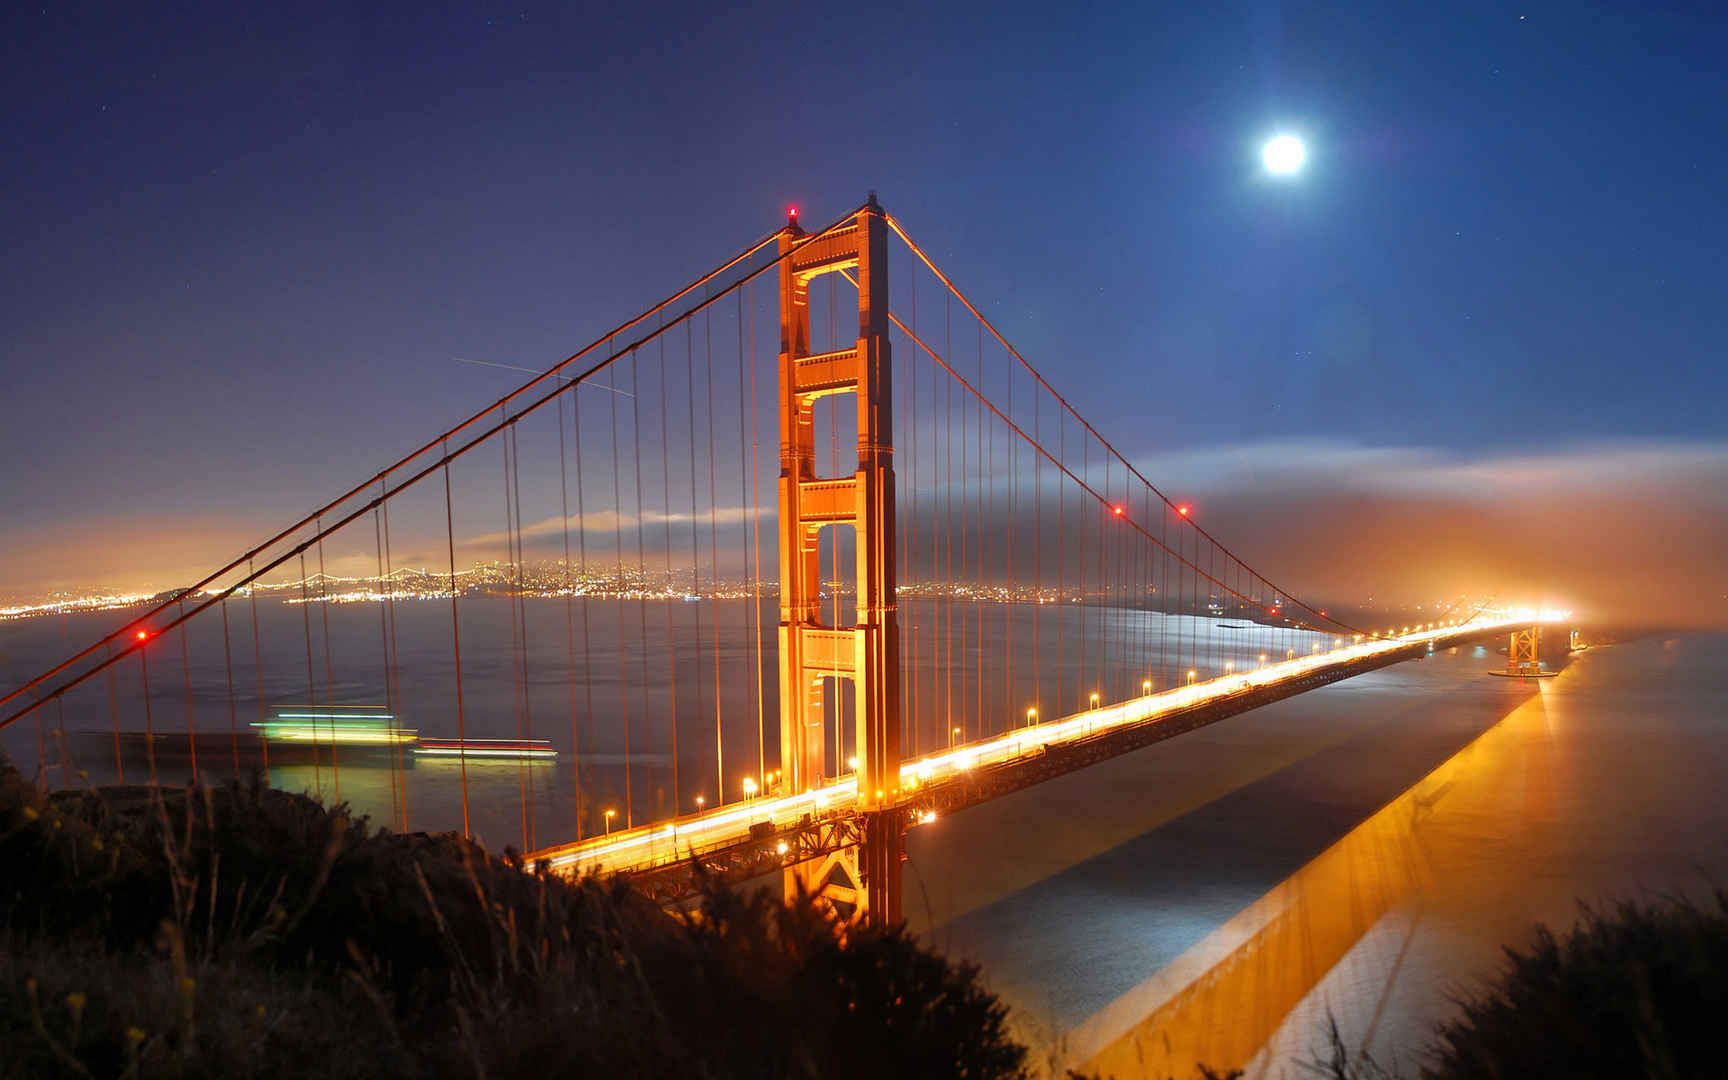 美国旧金山金门大桥